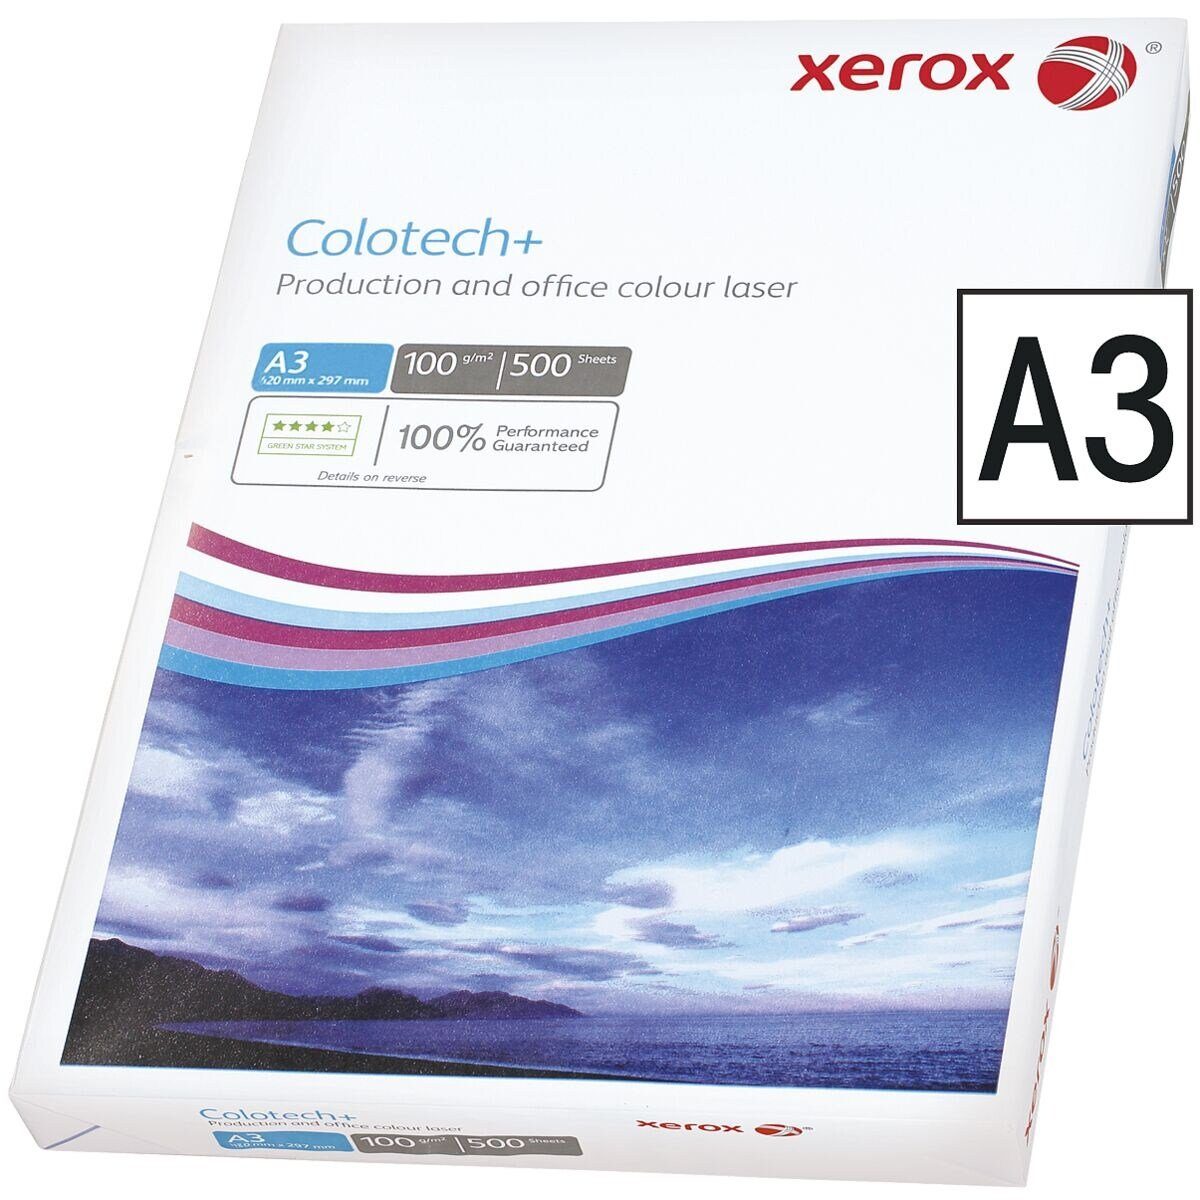 Xerox Farblaser-Druckerpapier Colotech+, Format DIN A3, 100 g/m², 500 Blatt